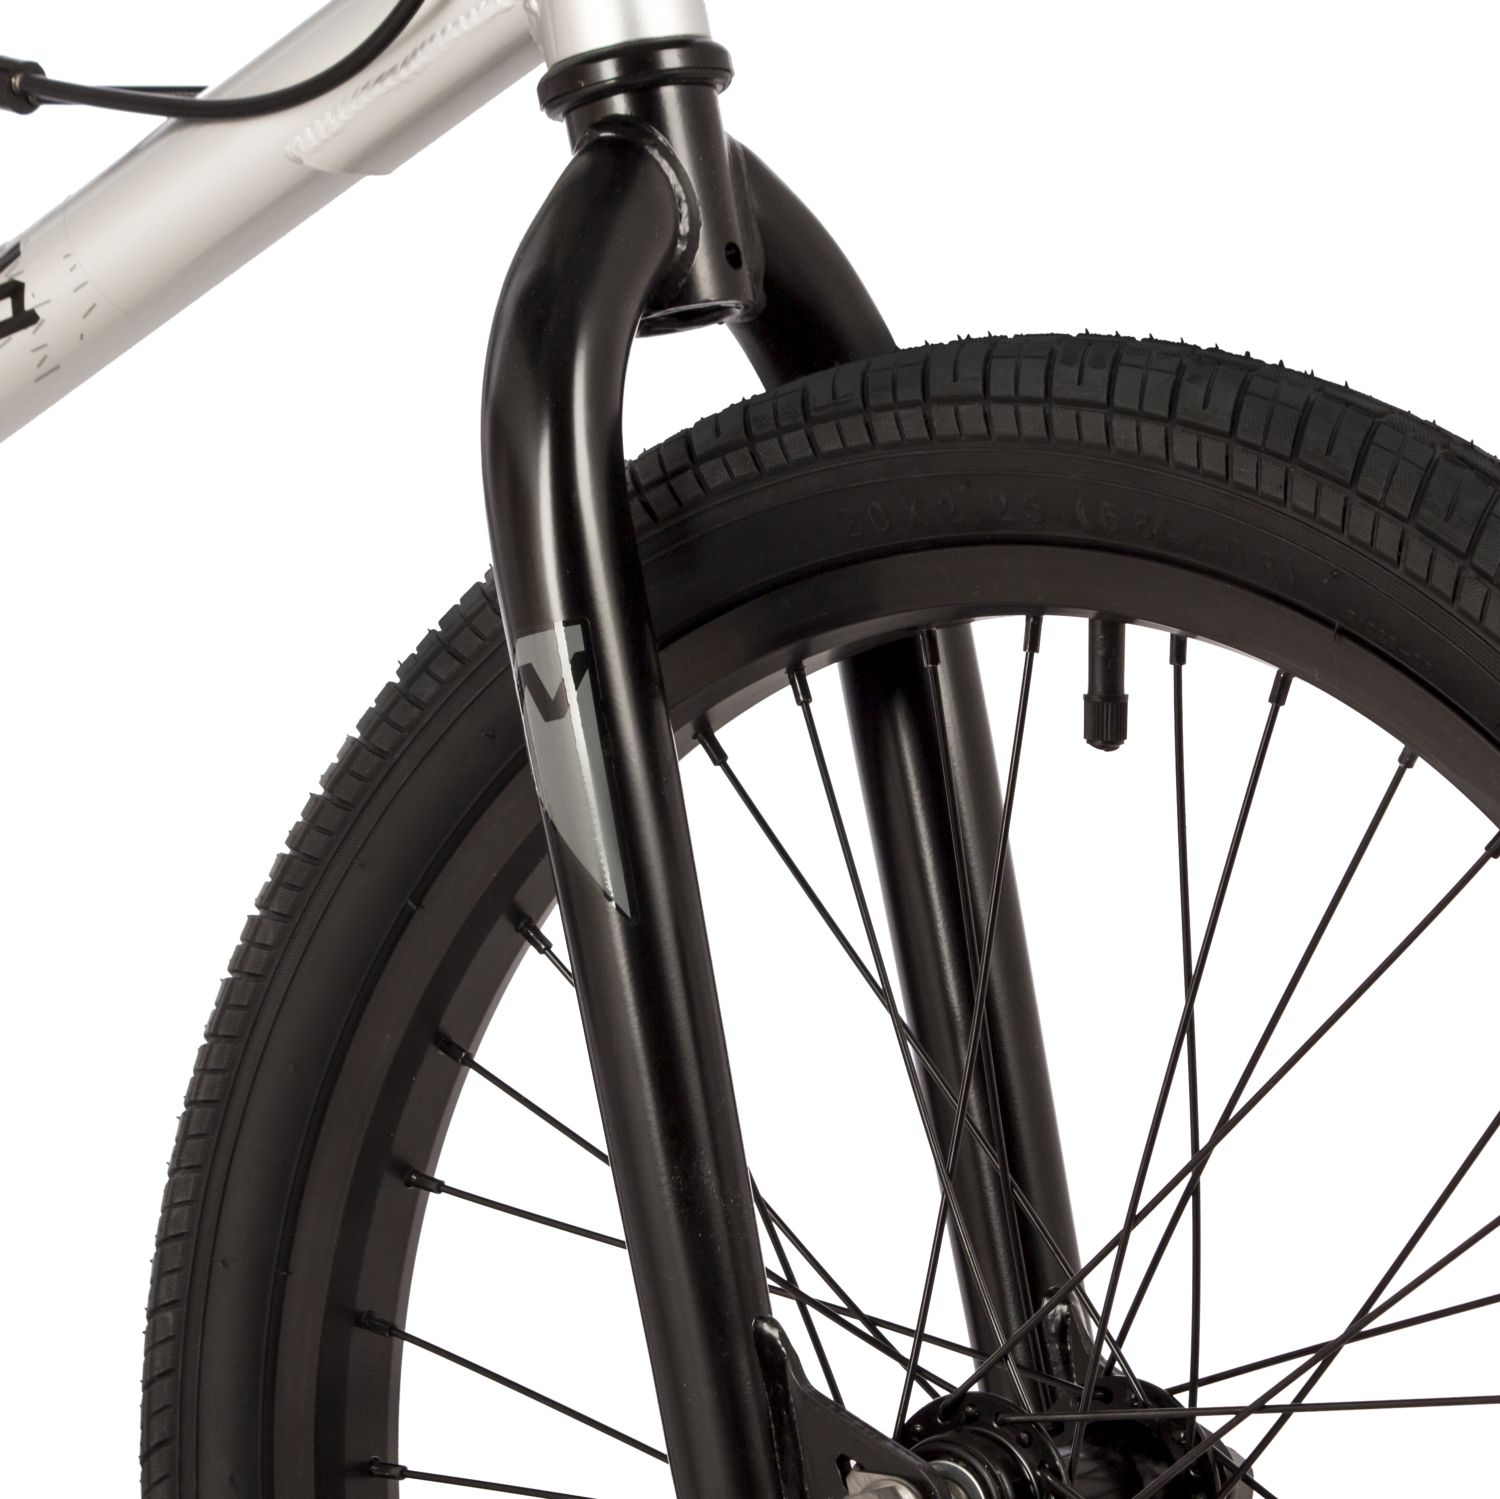 Экстремальный велосипед Novatrack BMX Psycho, год 2023, цвет Серебристый, ростовка 10